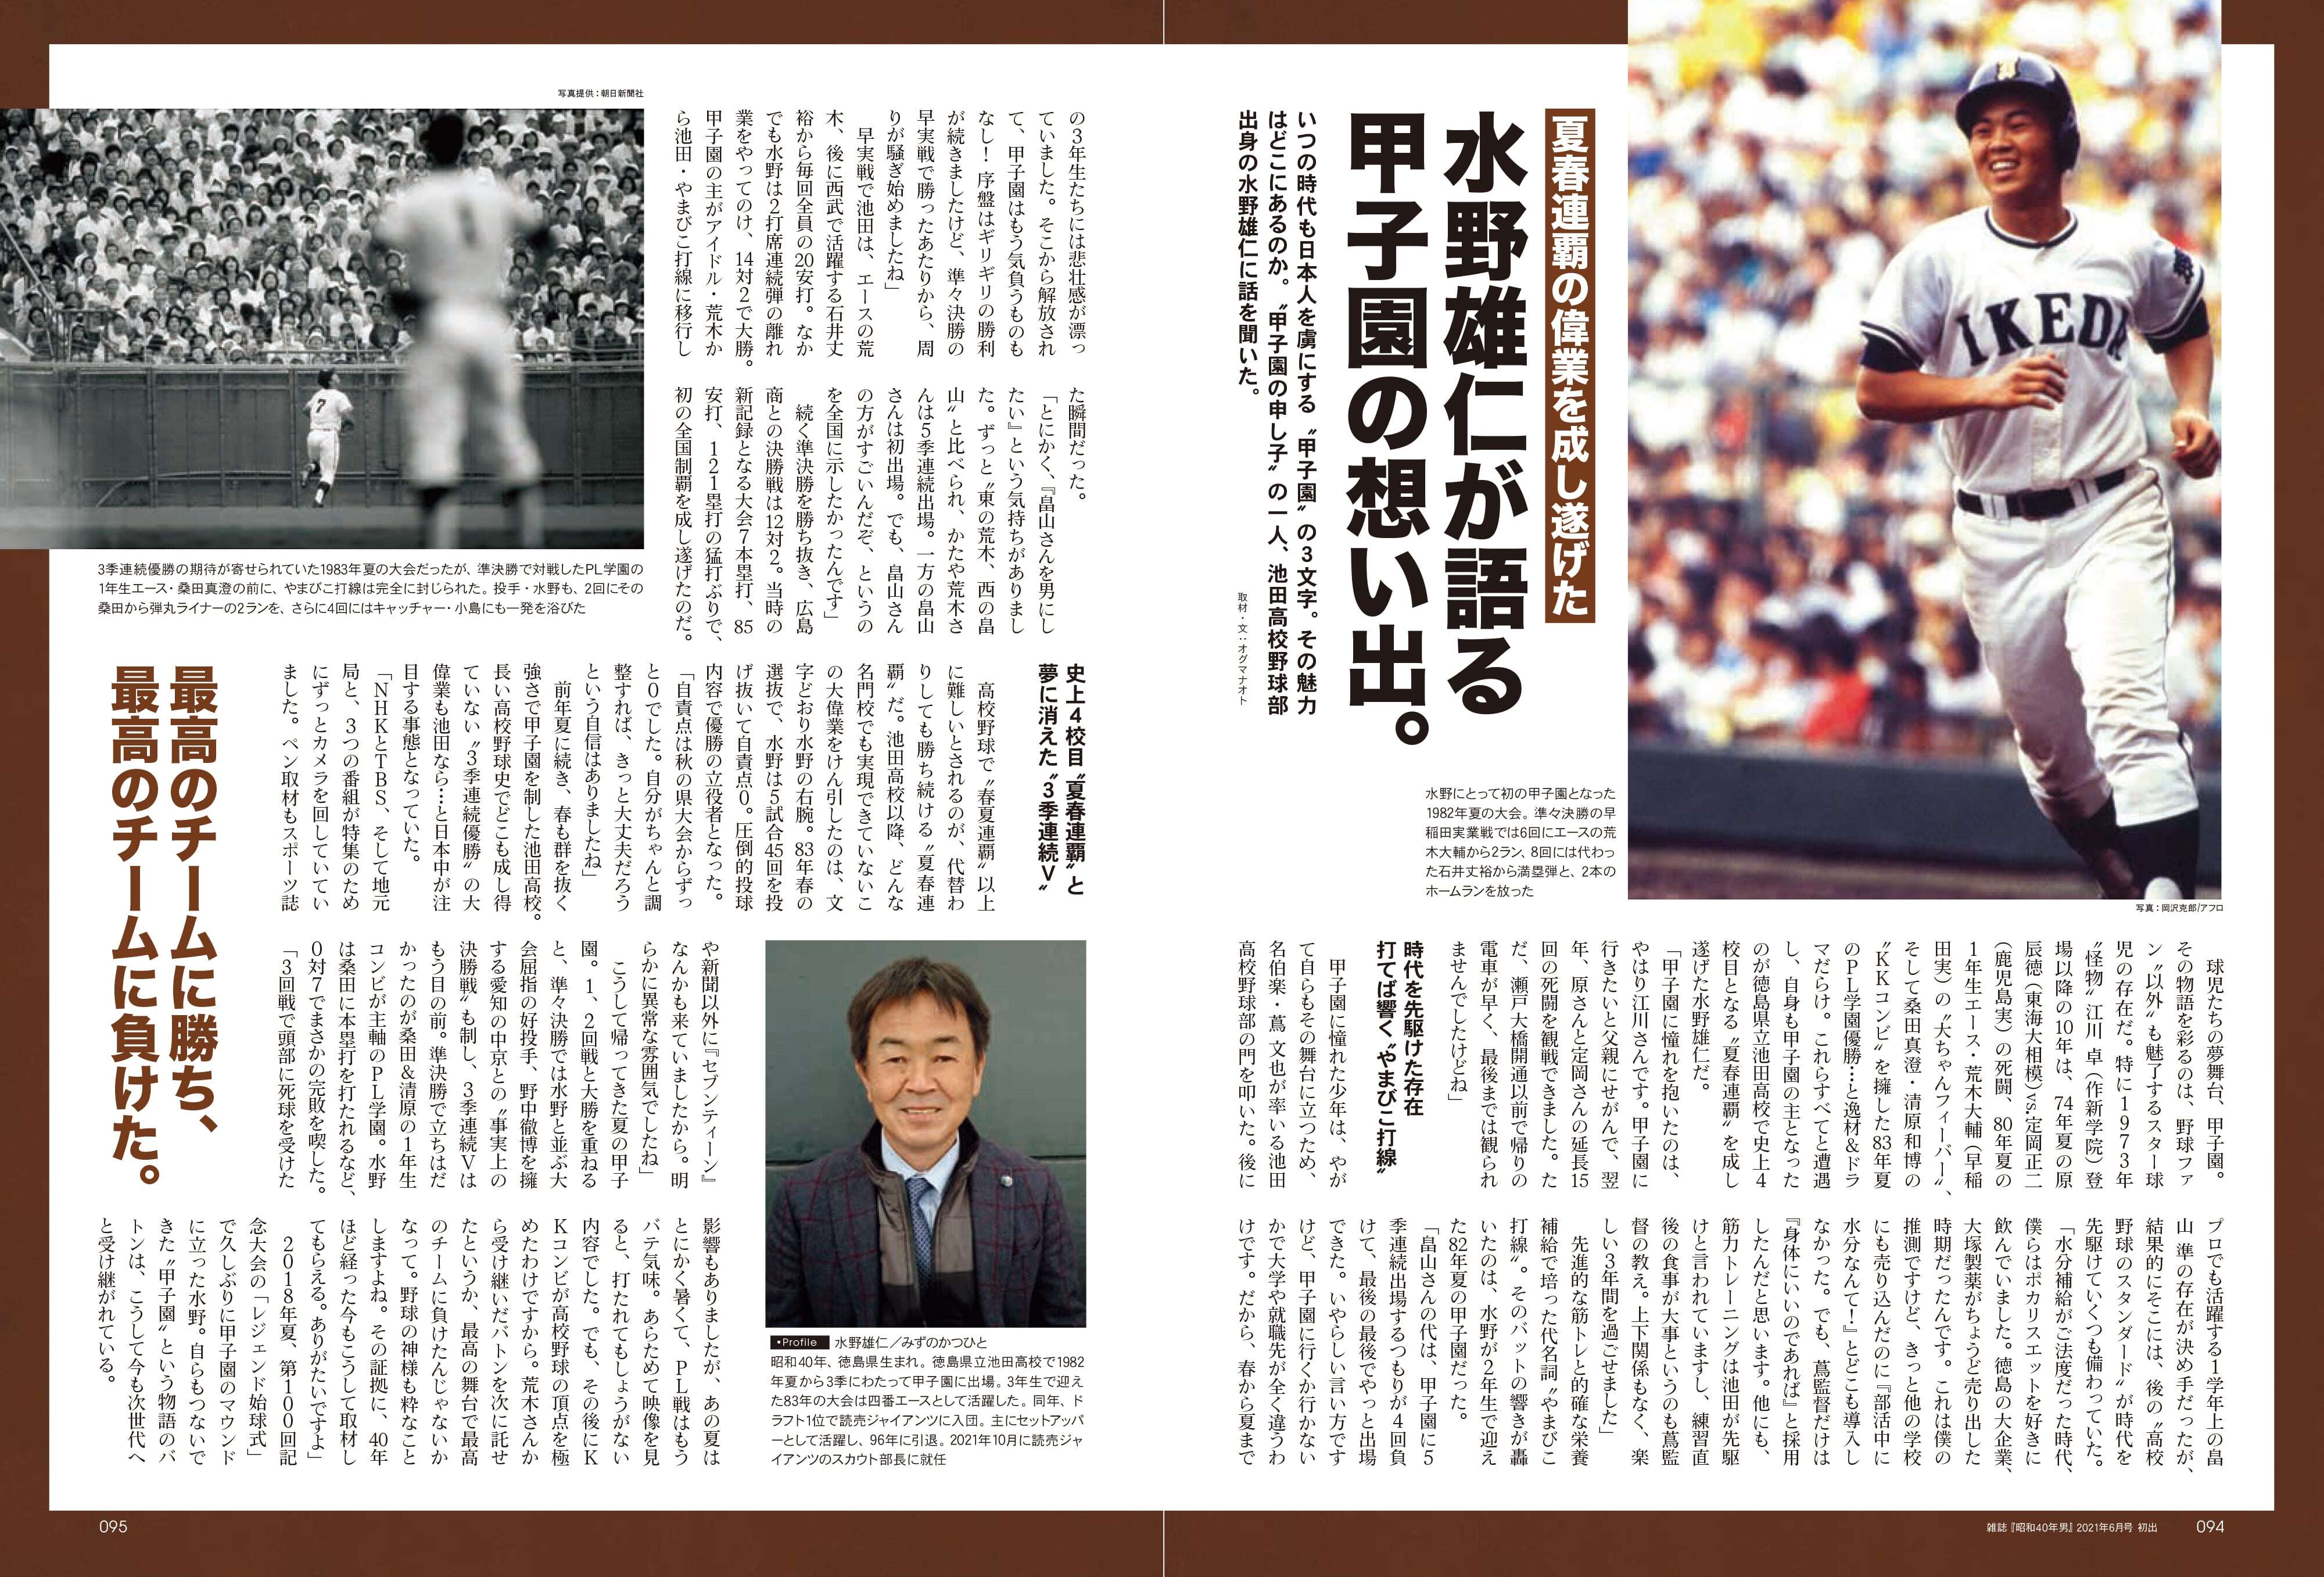 昭和40年男増刊 2023年9月号「あゝ夏の甲子園 昭和の高校野球、熱闘の